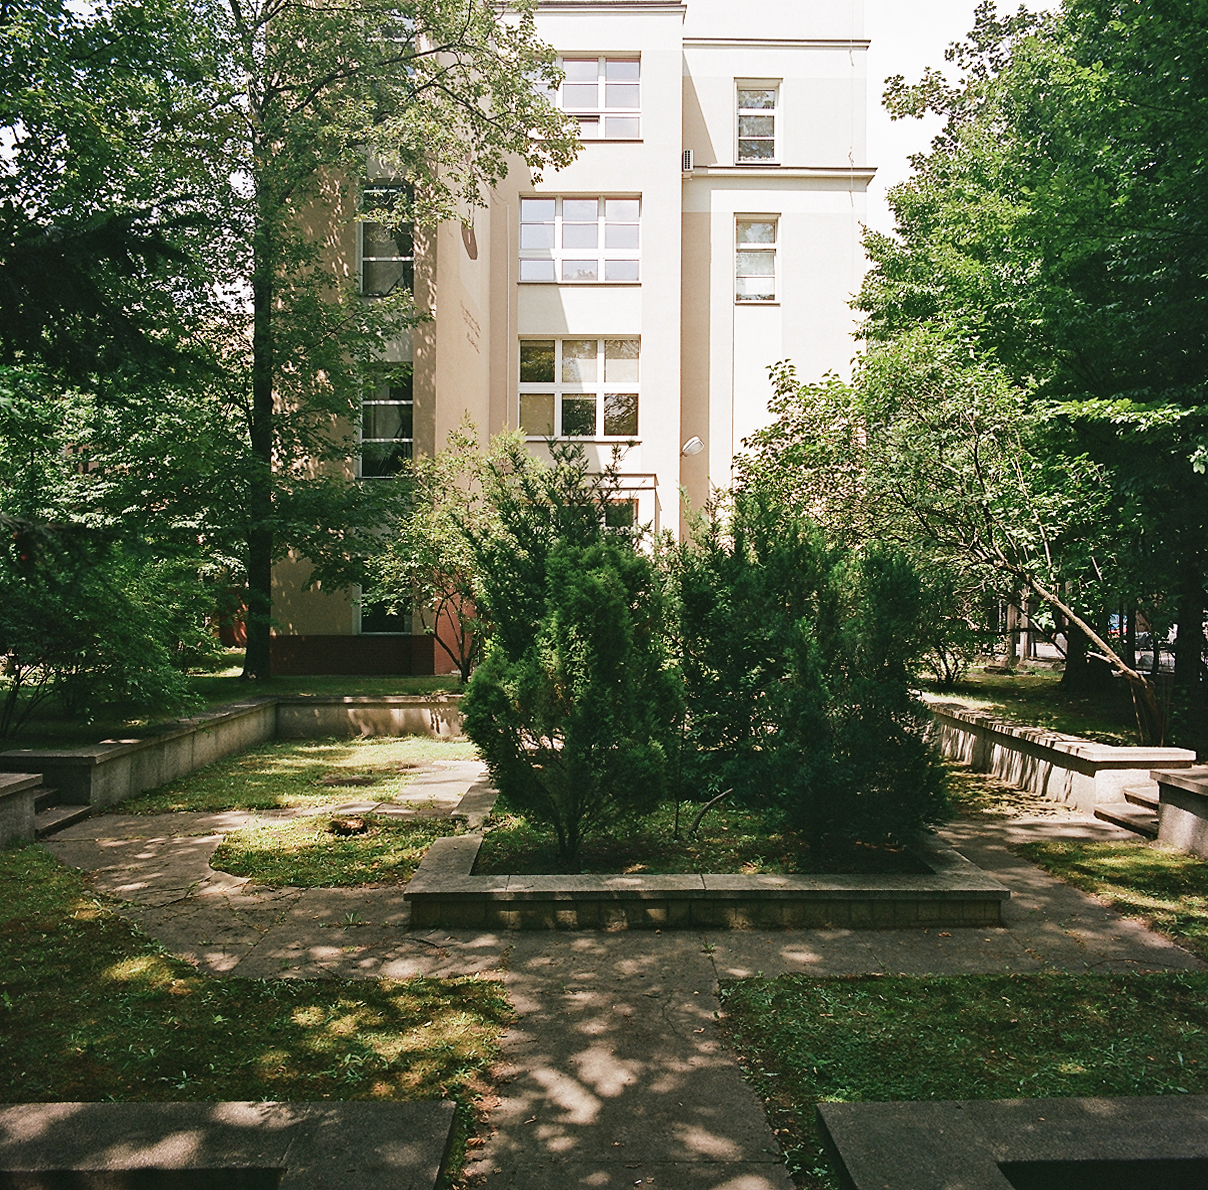 Basen w ogrodzie Instytutu Radowego, zainaugurowanym przez Marię Skłodowską-Curie w 1925 r. przy ulicy Wawelskiej w Warszawie. Sadzawka wymaga opróżnienia, remontu, przywrócenia cech stylowych małej architektury oraz obsadzenia roślinami wodnymi.